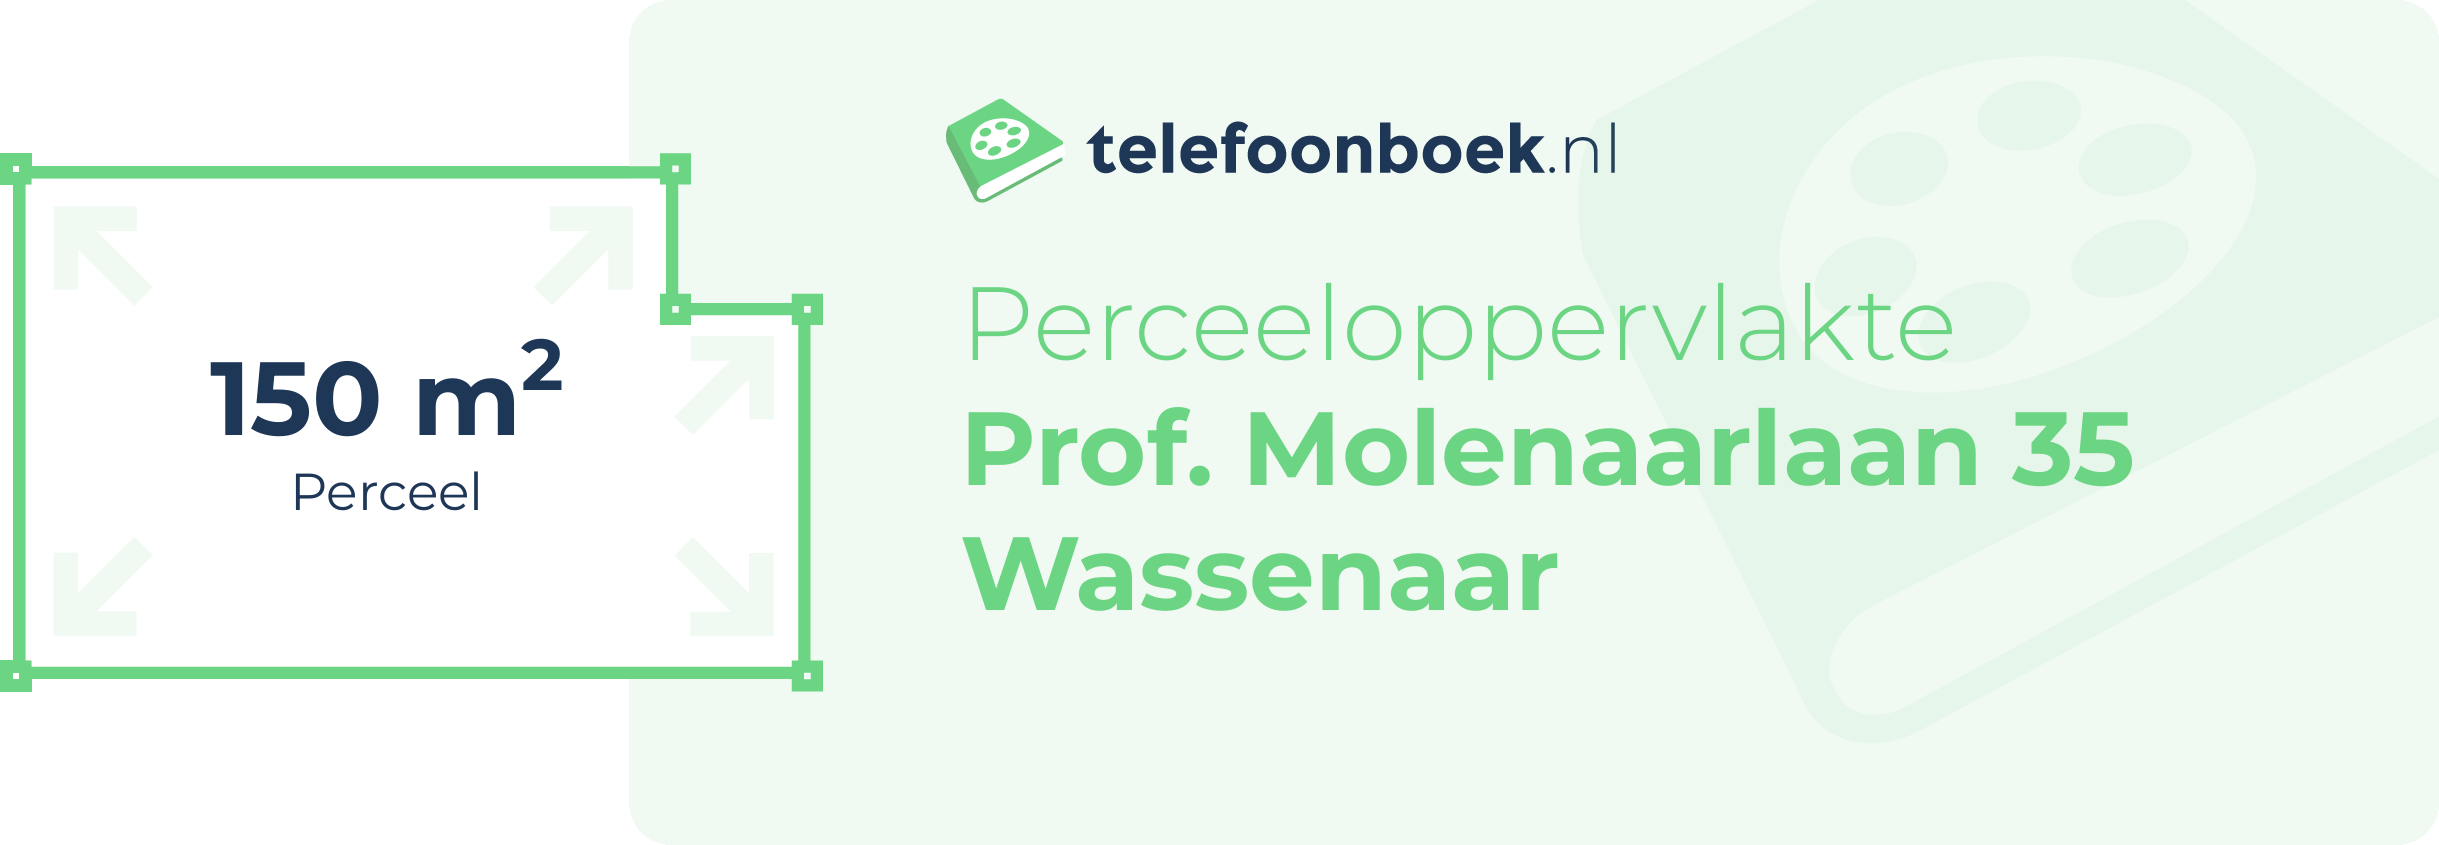 Perceeloppervlakte Prof. Molenaarlaan 35 Wassenaar